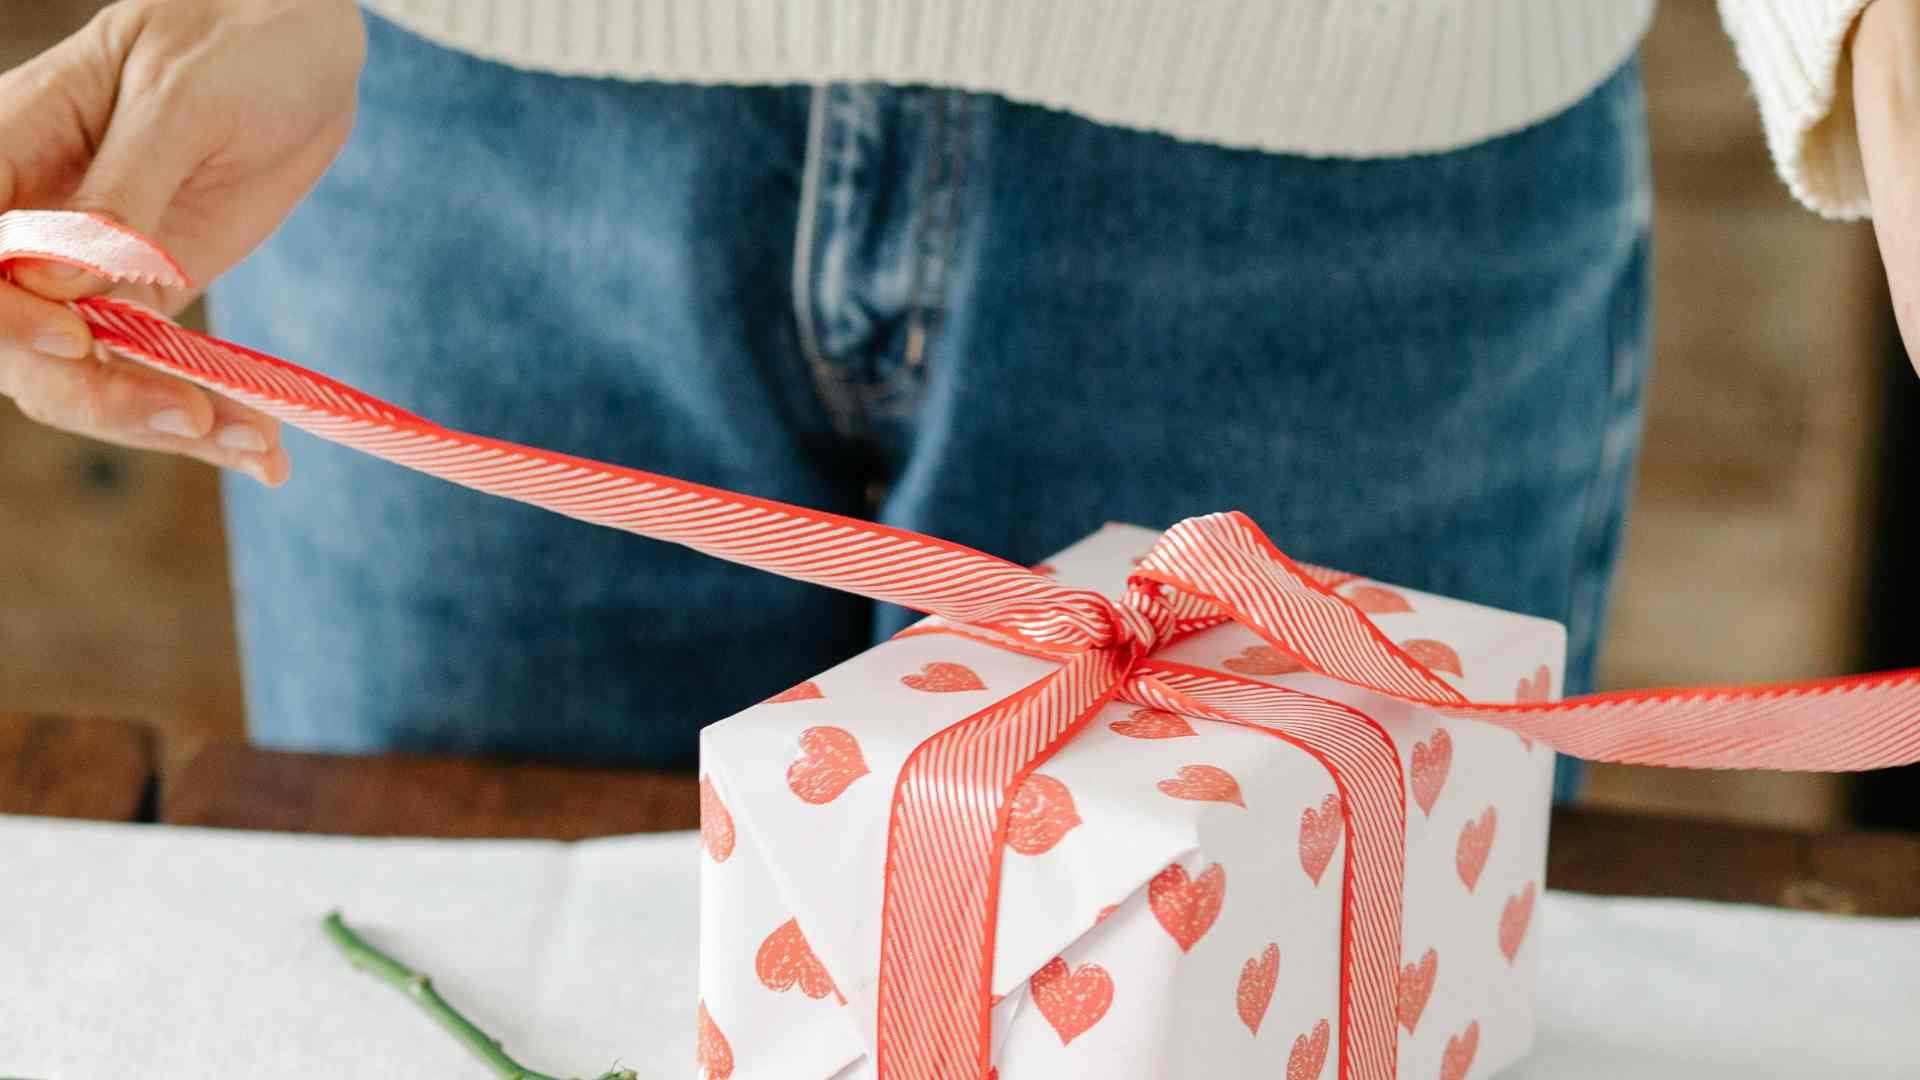 Rankos, rišančios raudonai baltai dryžuotą juostelę ant baltos dovanų dėžutės su raudonomis širdelėmis, pastatytos ant medinio paviršiaus.